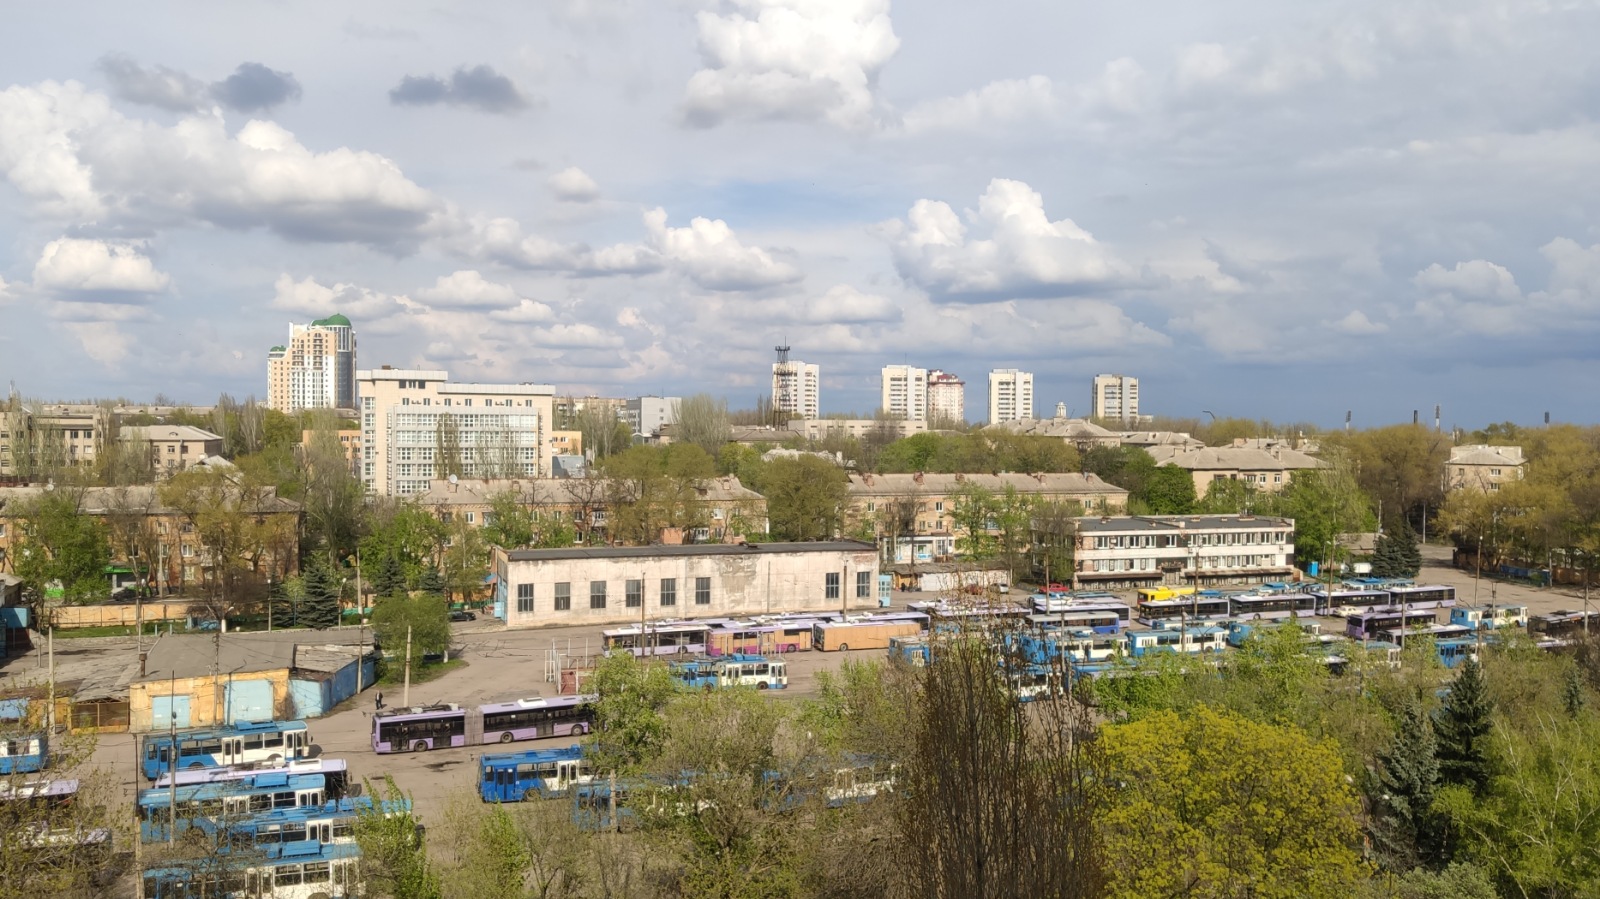 Донецк — Разные троллейбусные фотографии